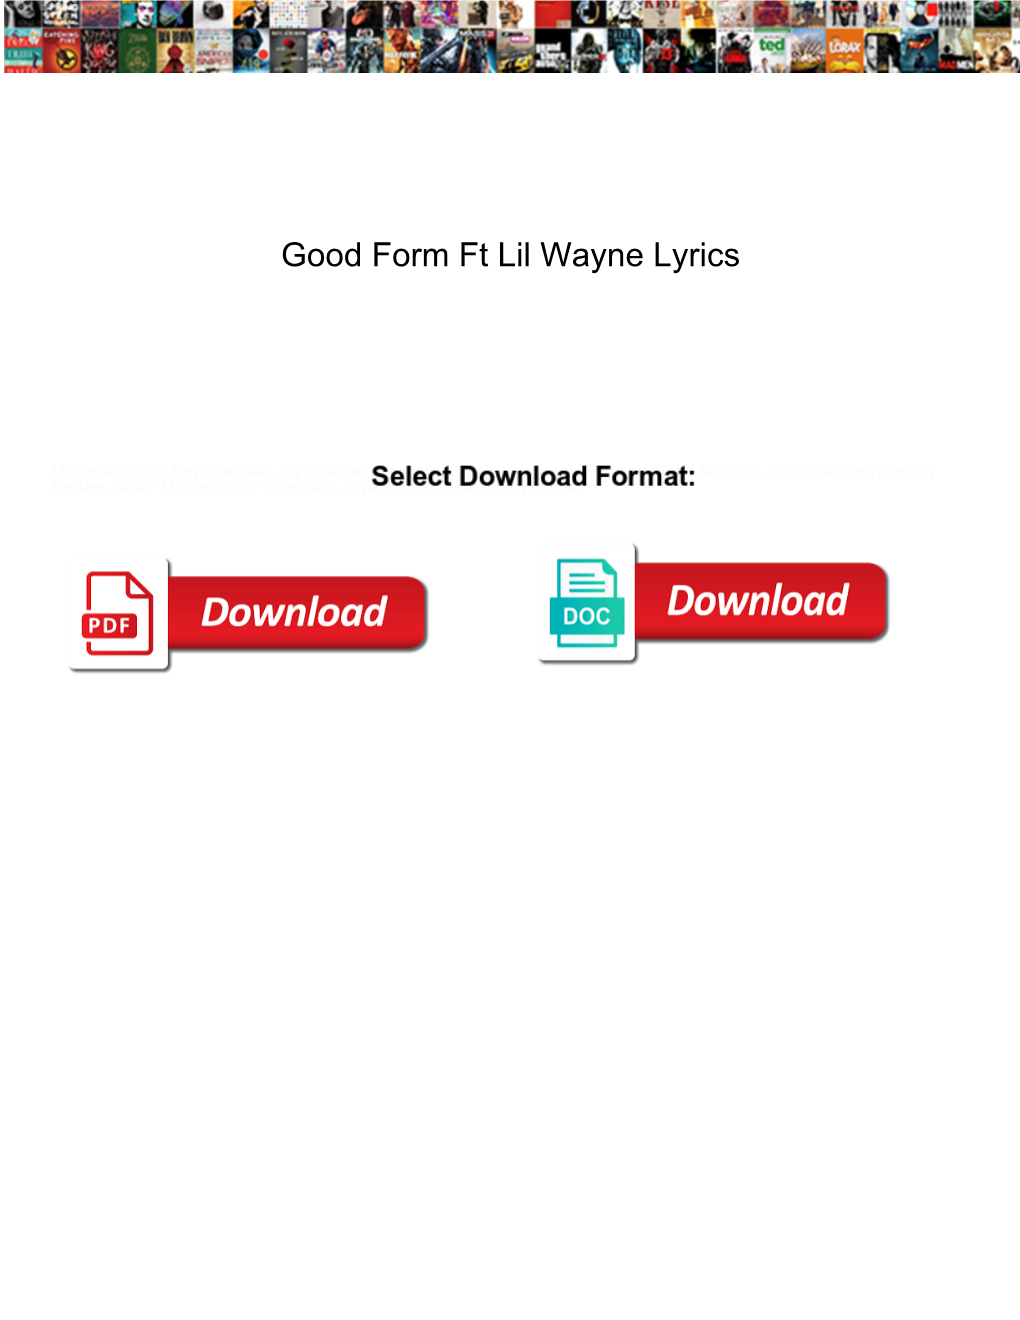 Good Form Ft Lil Wayne Lyrics